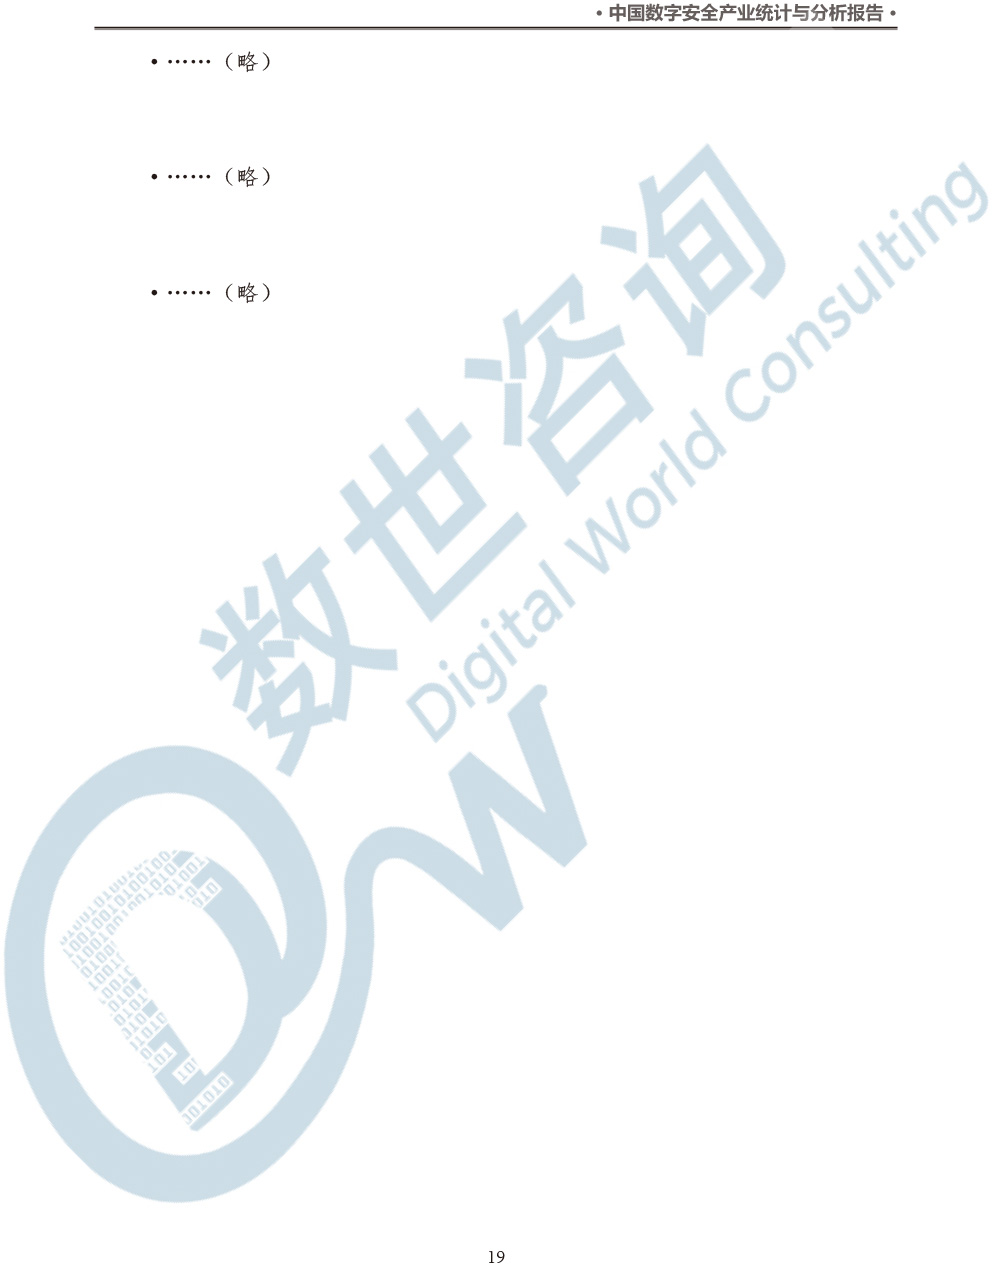 中国数字安全产业统计与分析报告(2022)图-26.jpg